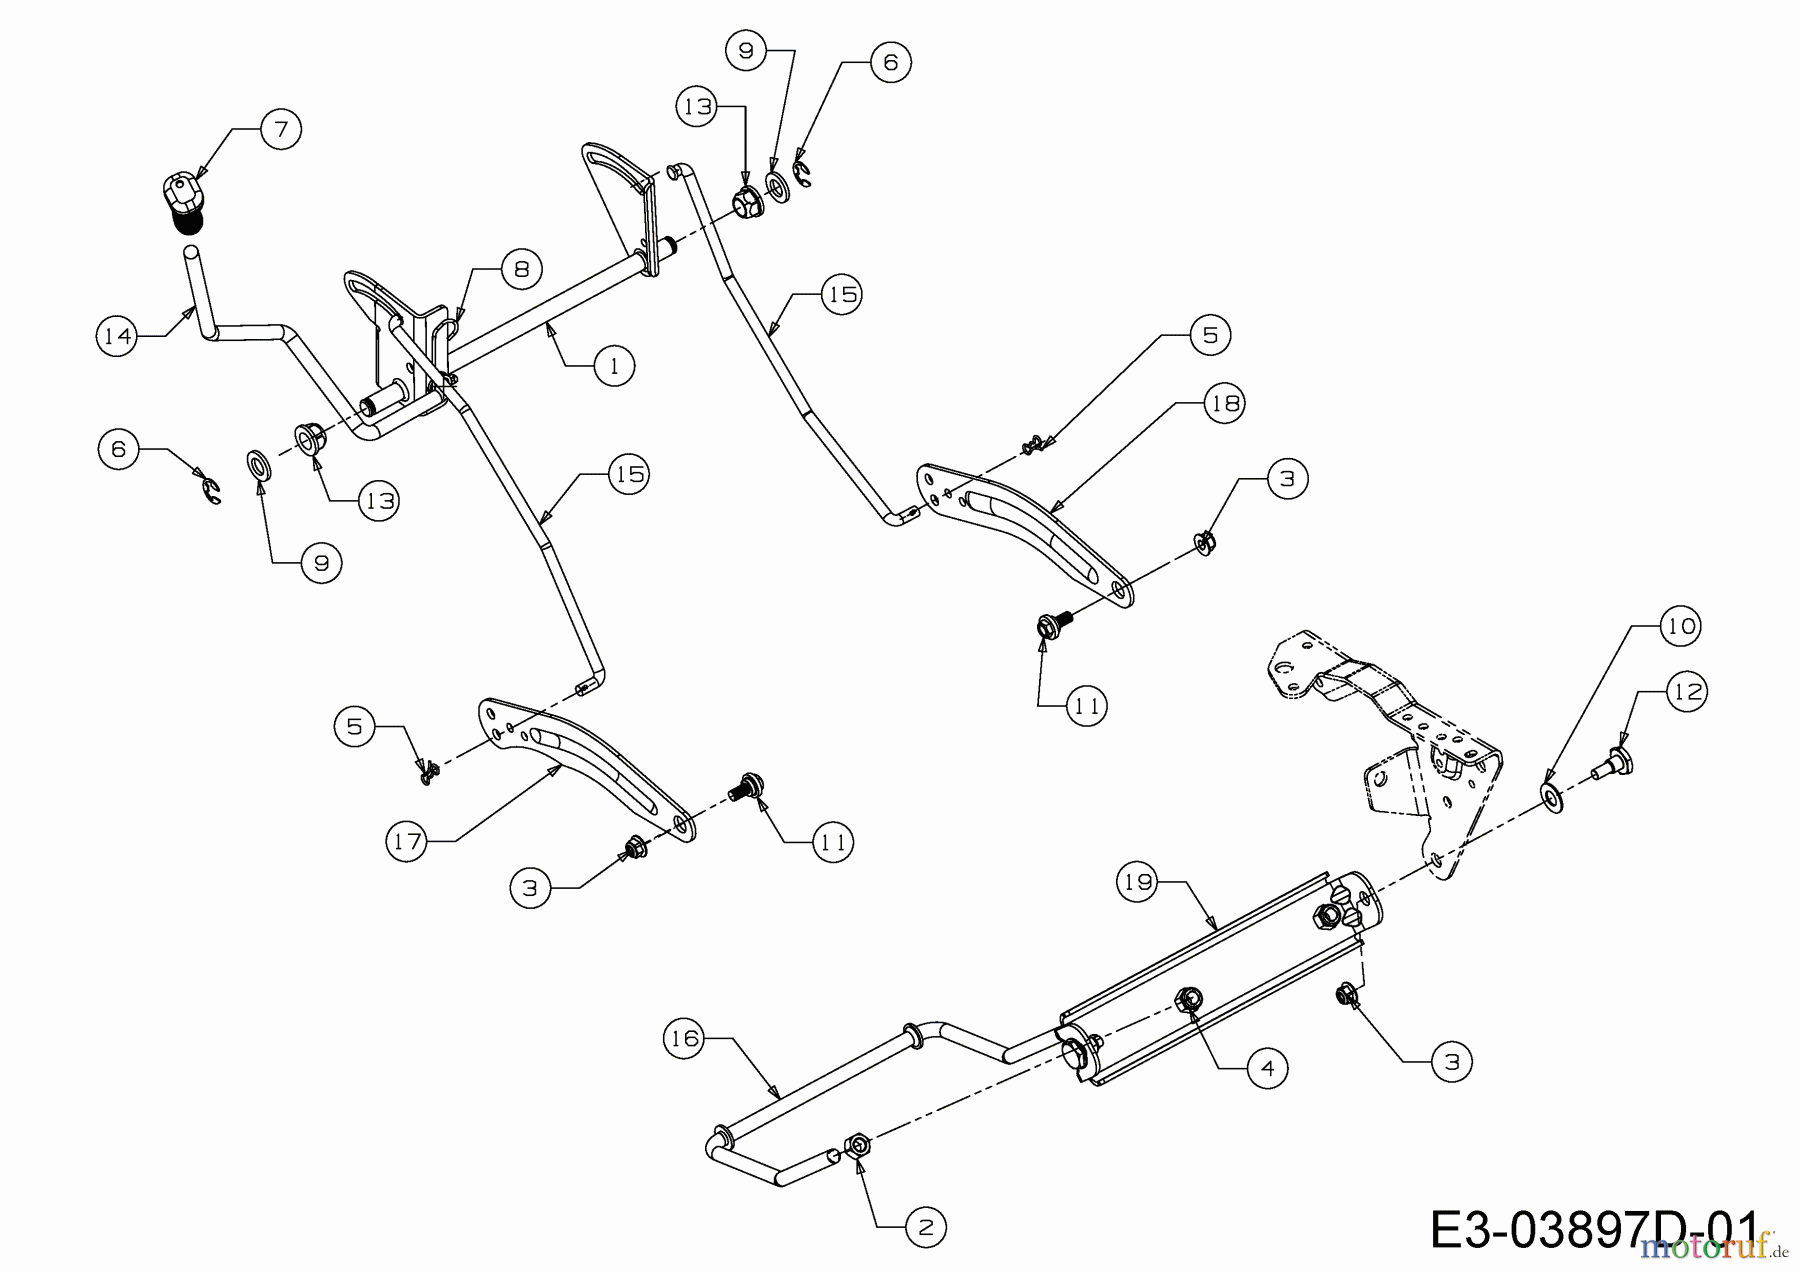  Dormak Tracteurs de pelouse TXT 36 DK 13A776SE699  (2020) Relevage plateau de coupe